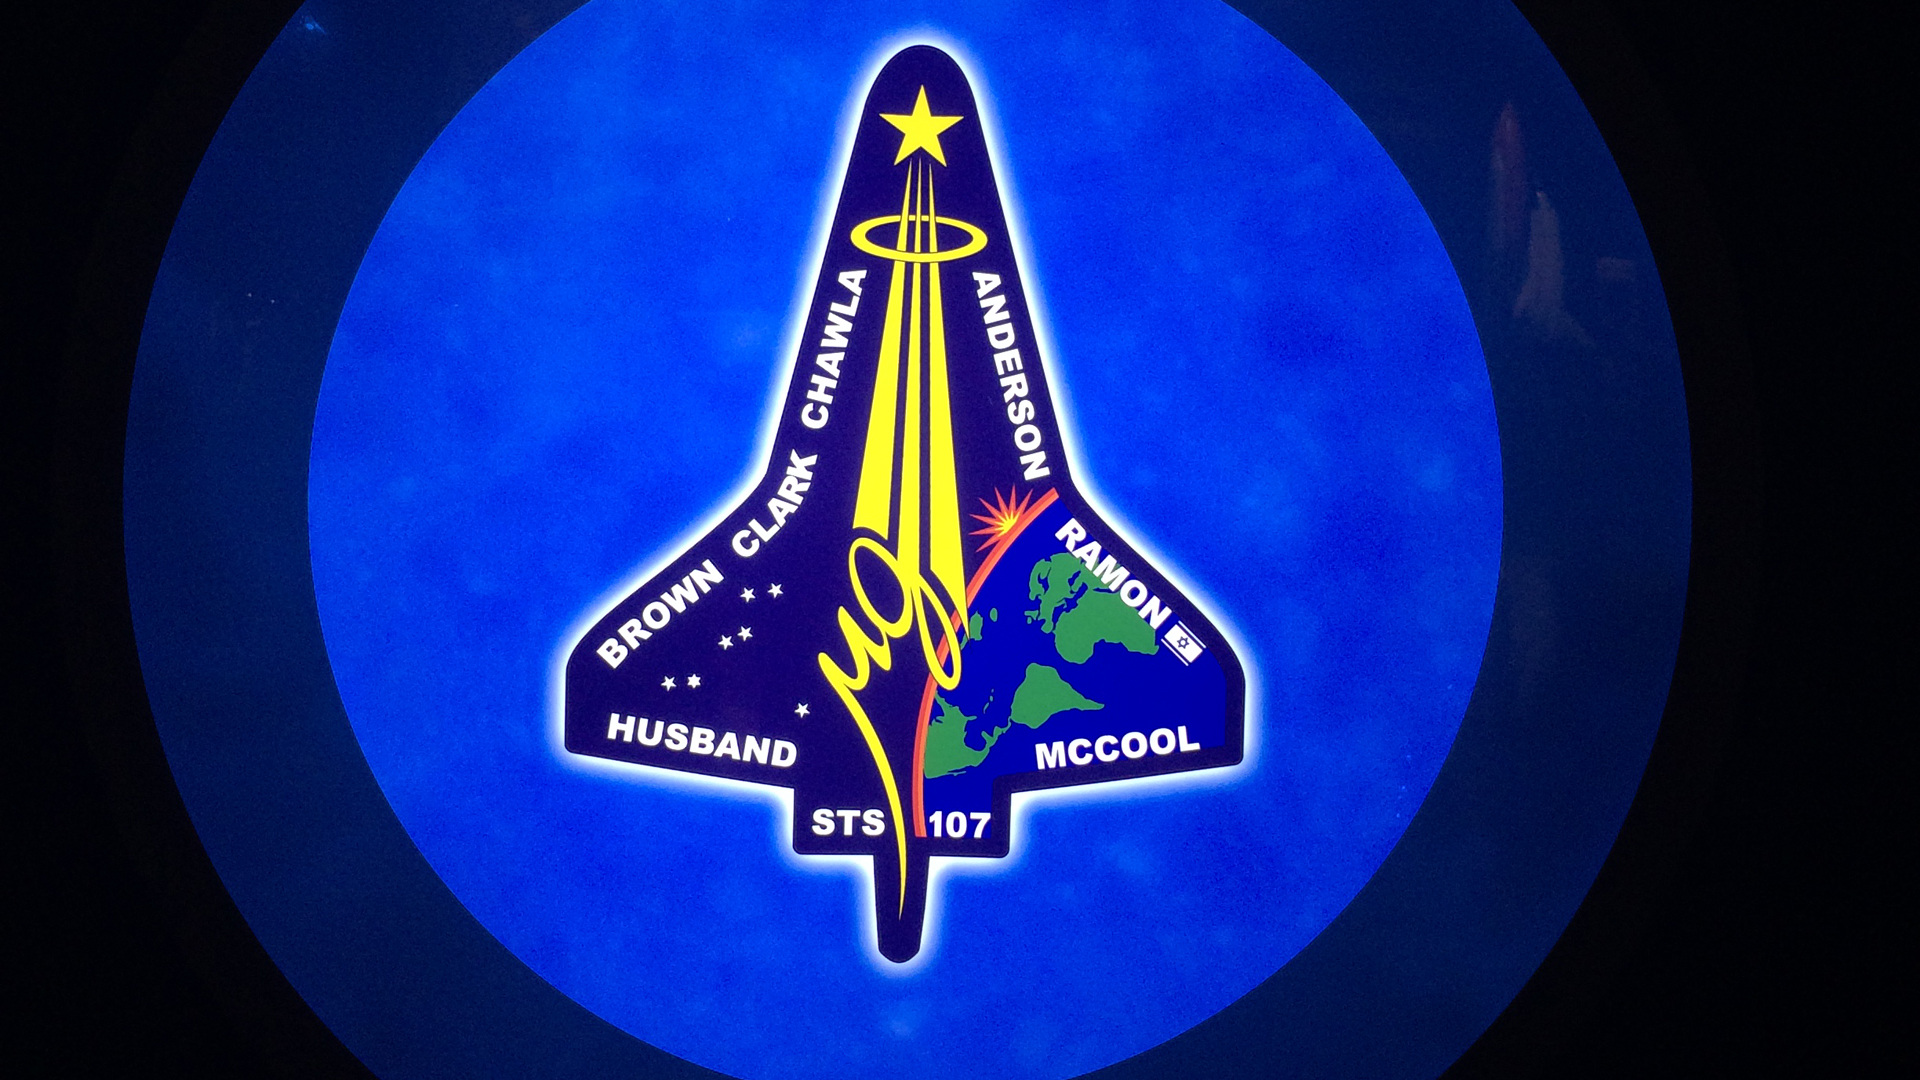 Für jede Weltraummission wird bei der NASA ein eigenes Logo entworfen, das unter anderem von den Astronauten auf ihren Anzügen getragen wird. Das Logo der fatalen Mission der Columbia zeigt die israelische Flagge neben dem Namen Ramons.